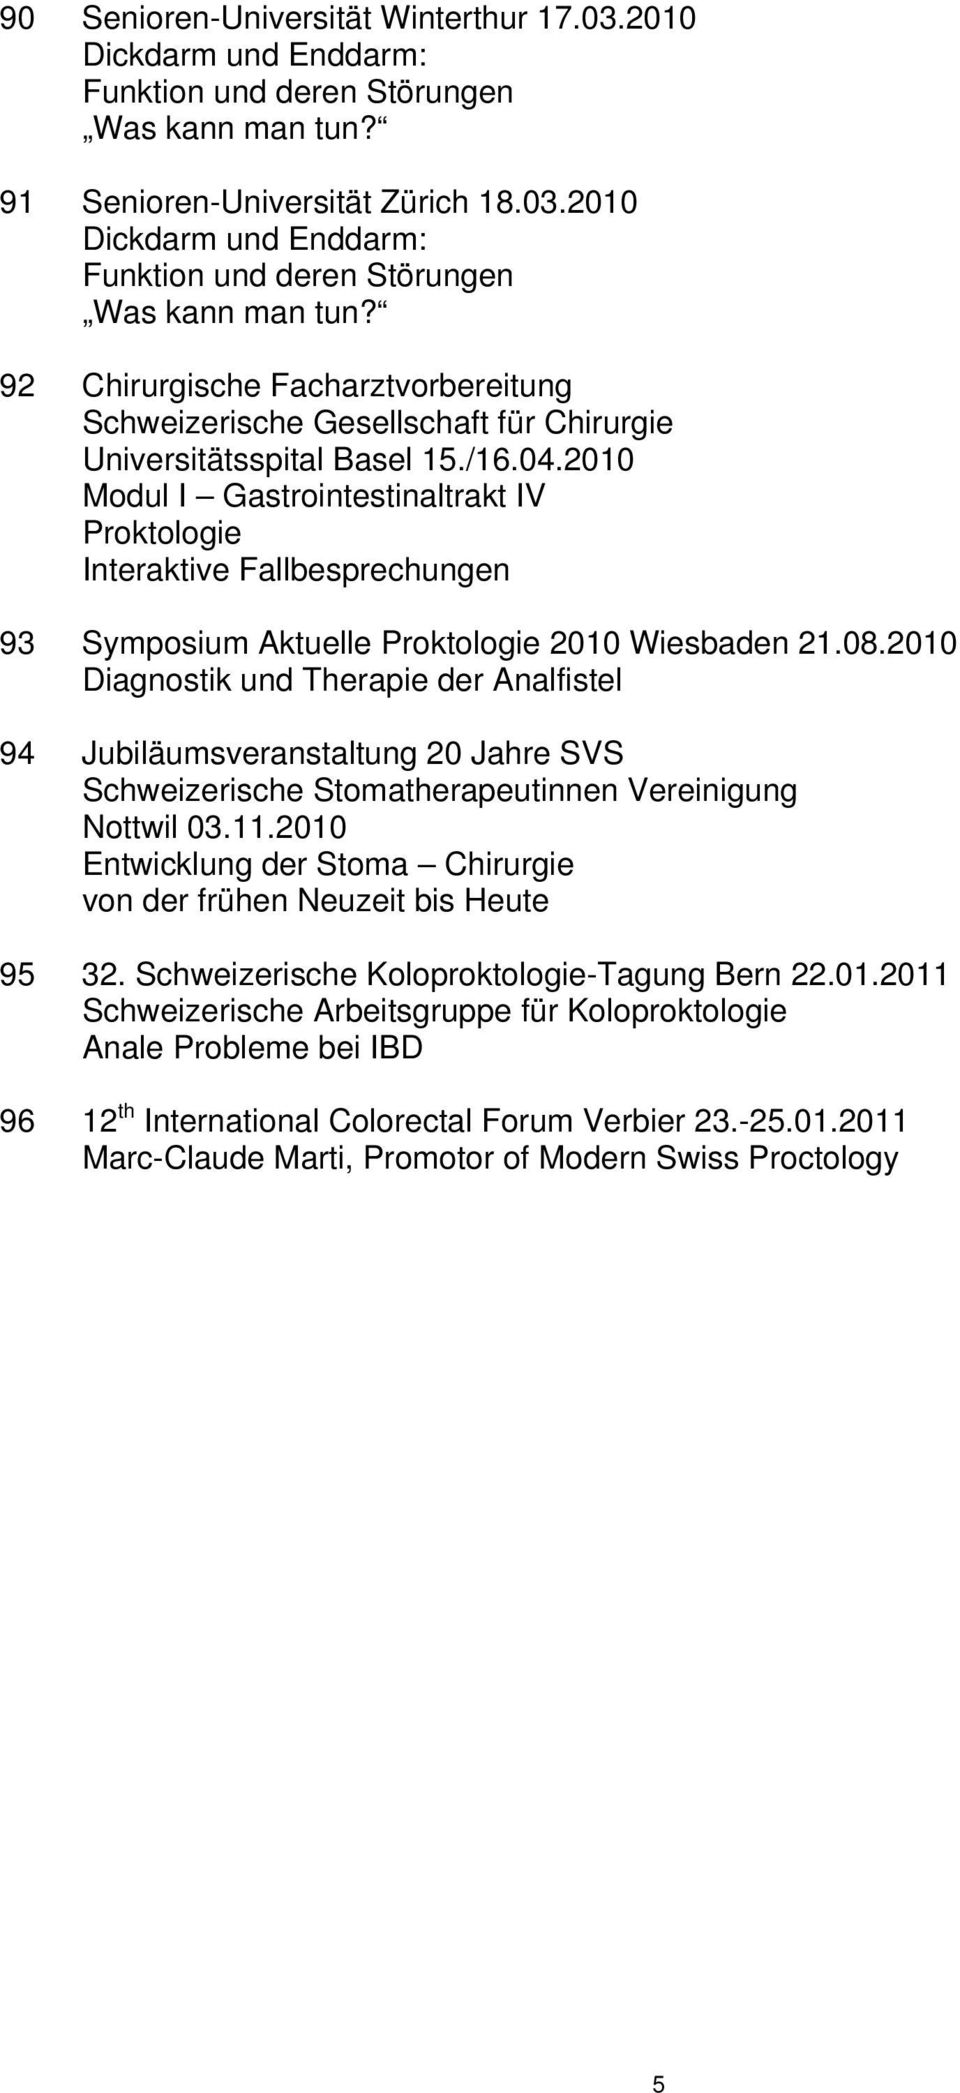 92 Chirurgische Facharztvorbereitung Schweizerische Gesellschaft für Chirurgie Universitätsspital Basel 15./16.04.